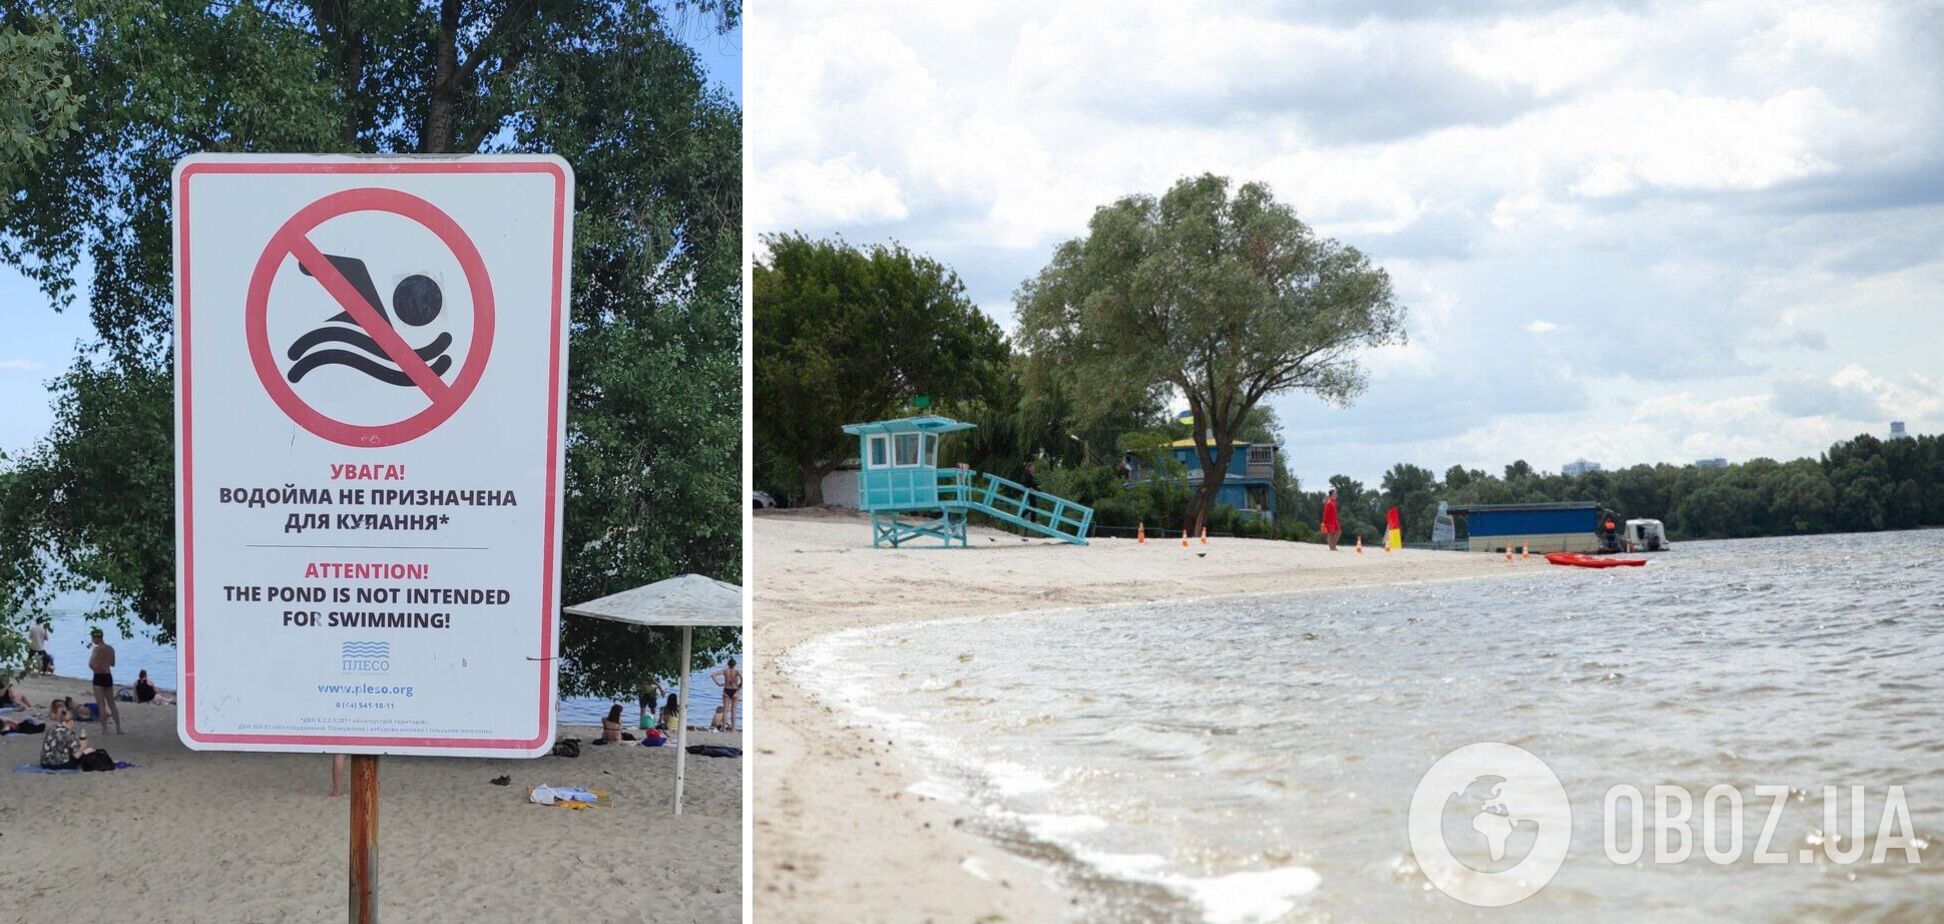 Фахівці продовжують моніторити стан води на пляжах столиці